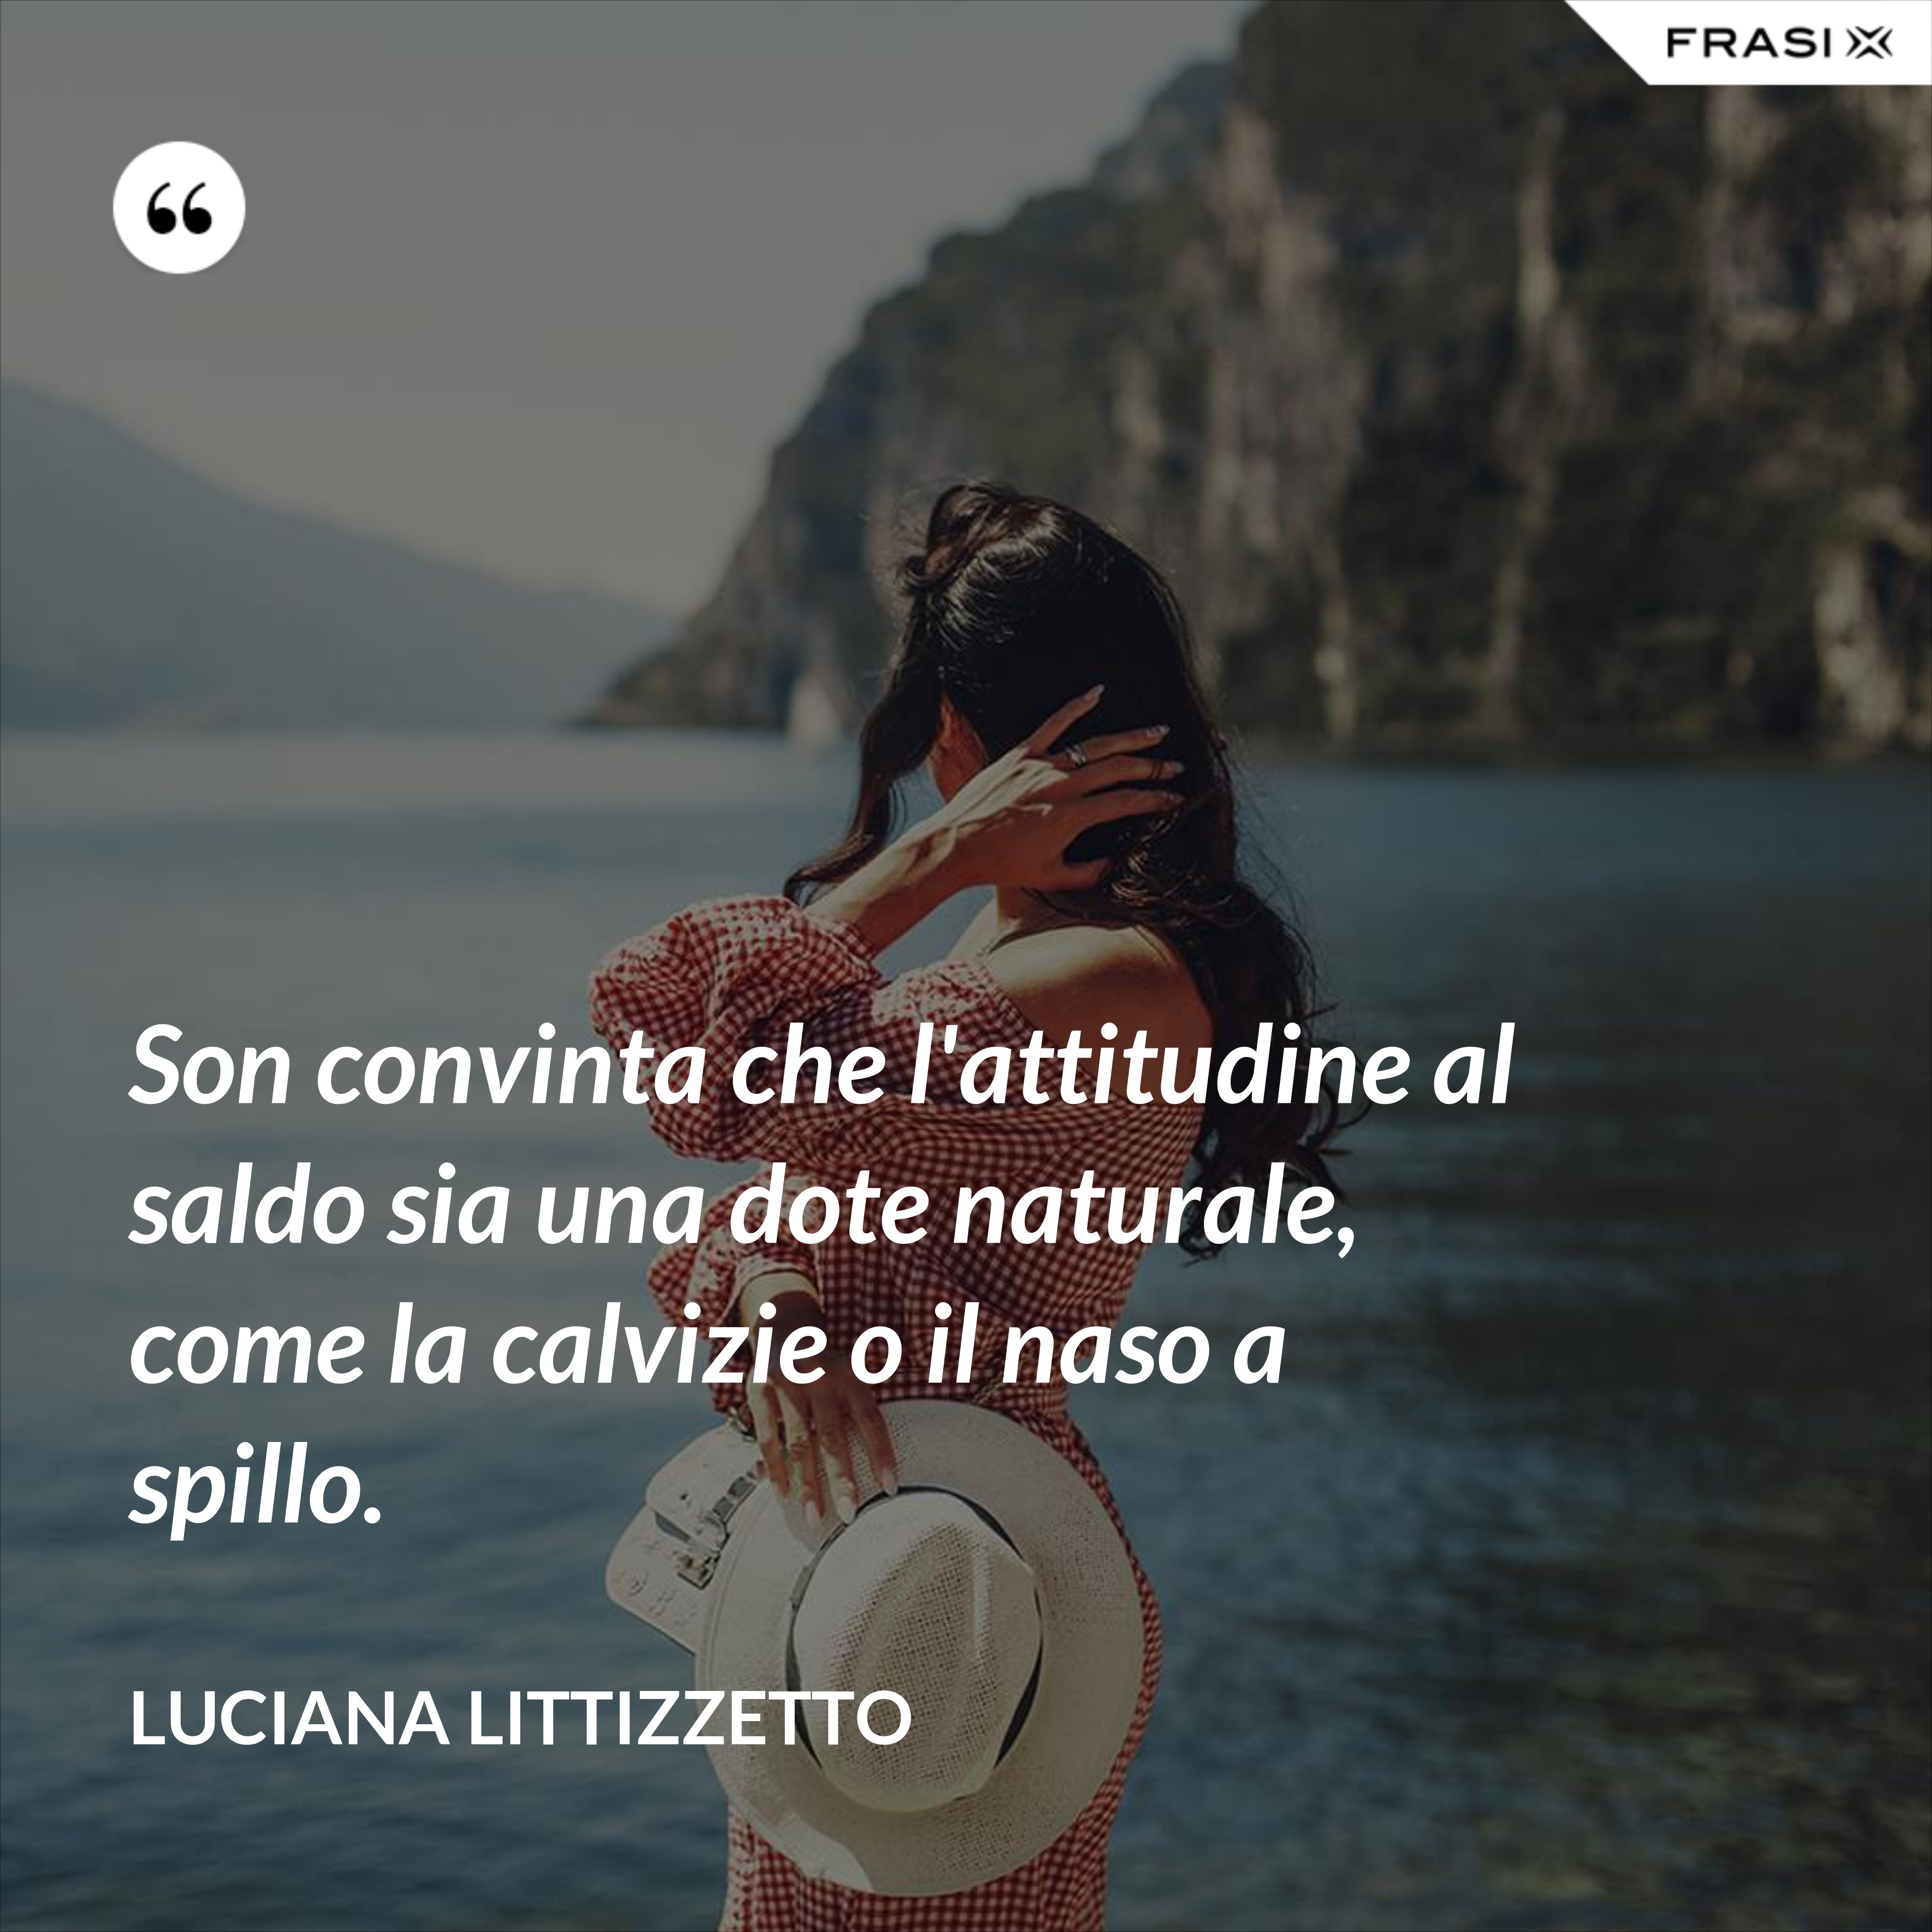 Son convinta che l'attitudine al saldo sia una dote naturale, come la calvizie o il naso a spillo. - Luciana Littizzetto